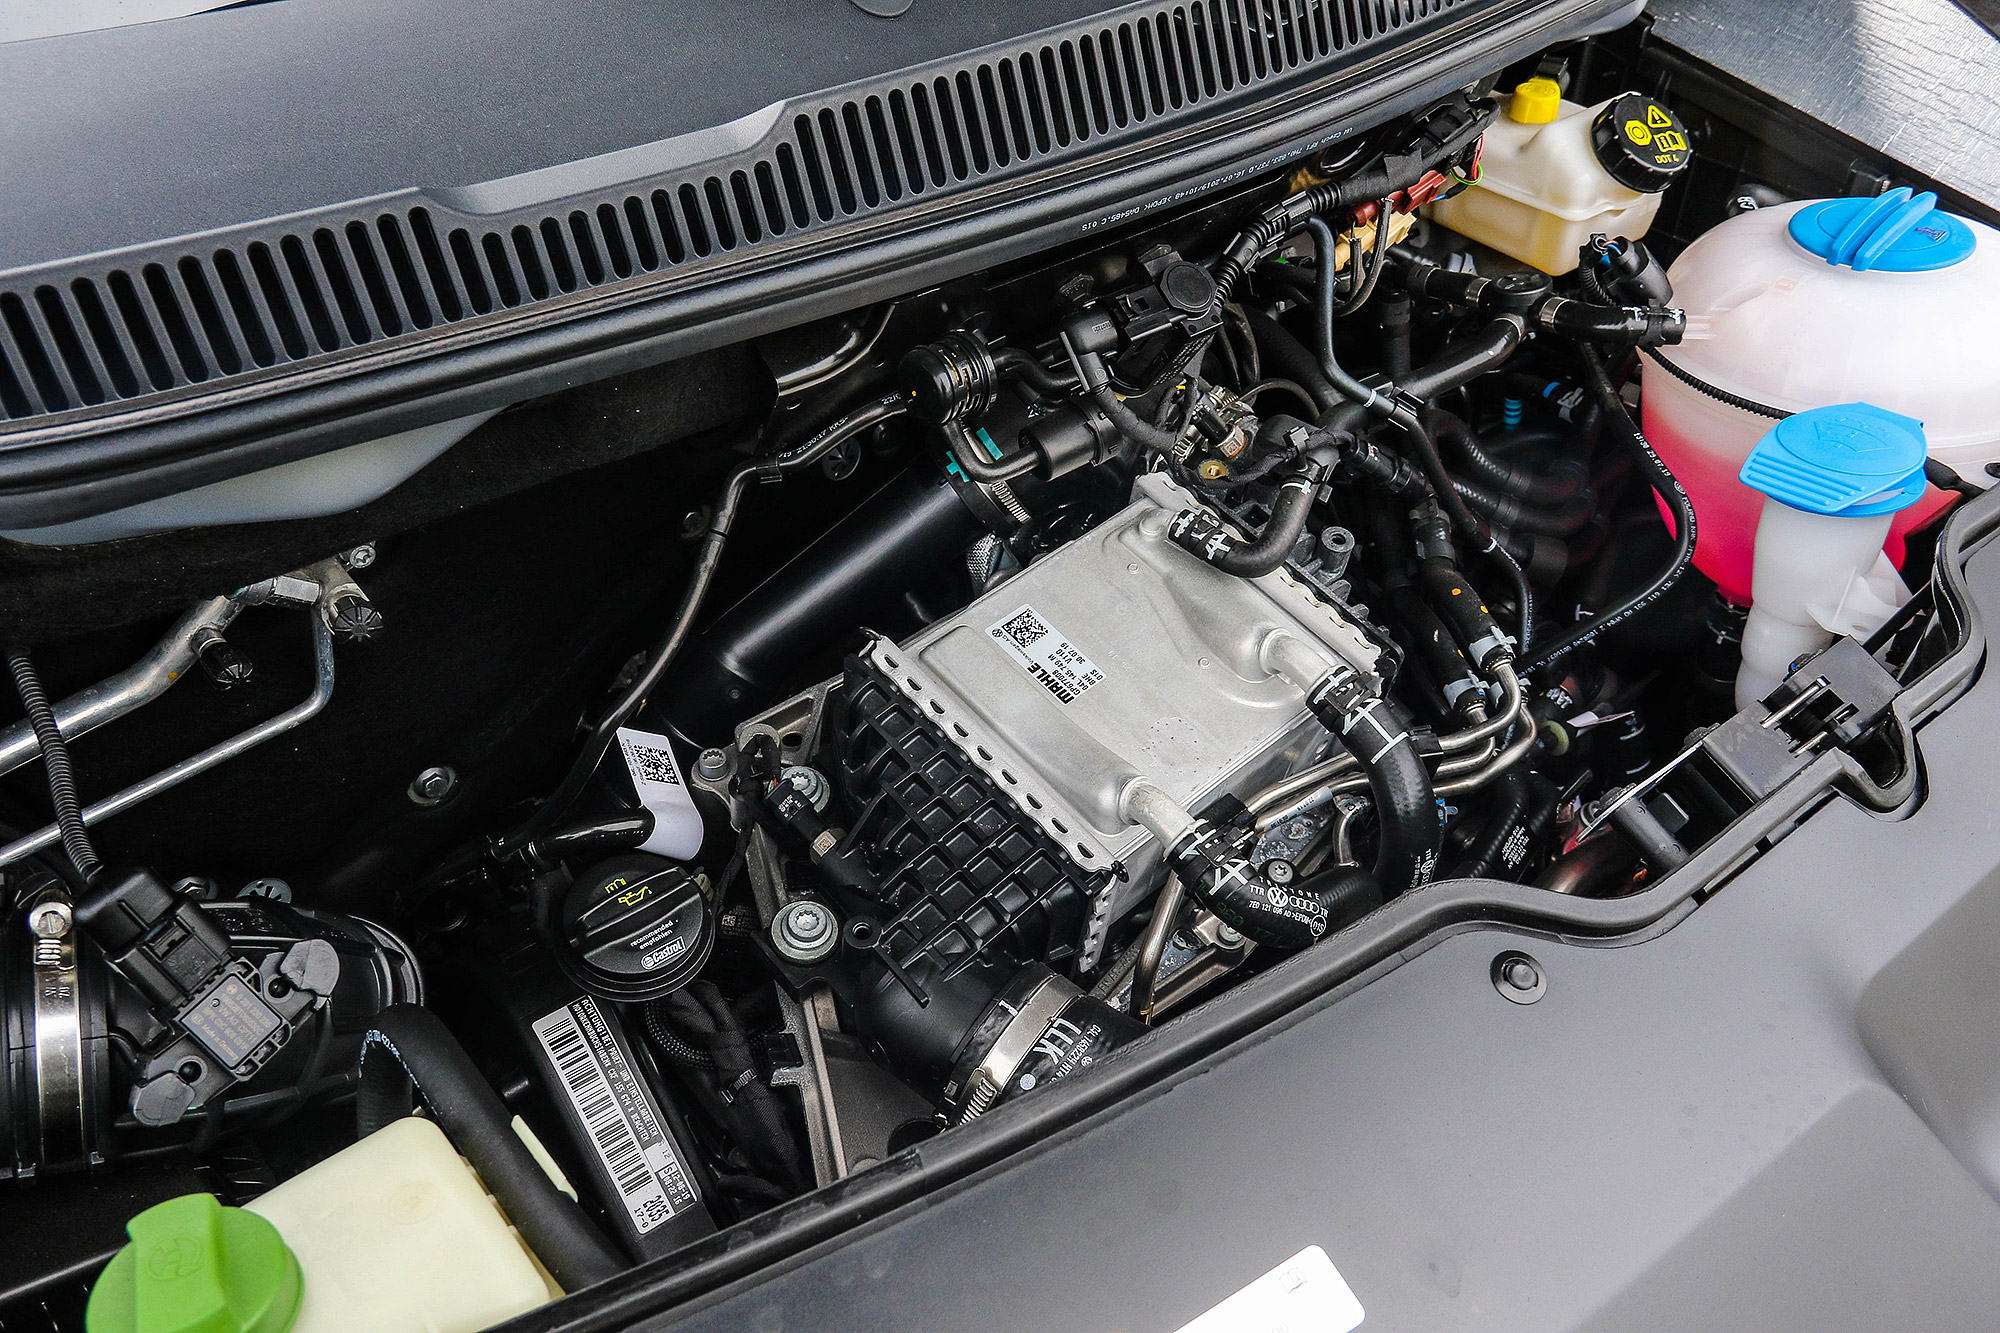 2.0 TDI 柴油引擎具有 150 匹馬力與 34.7 公斤米扭力的輸出。